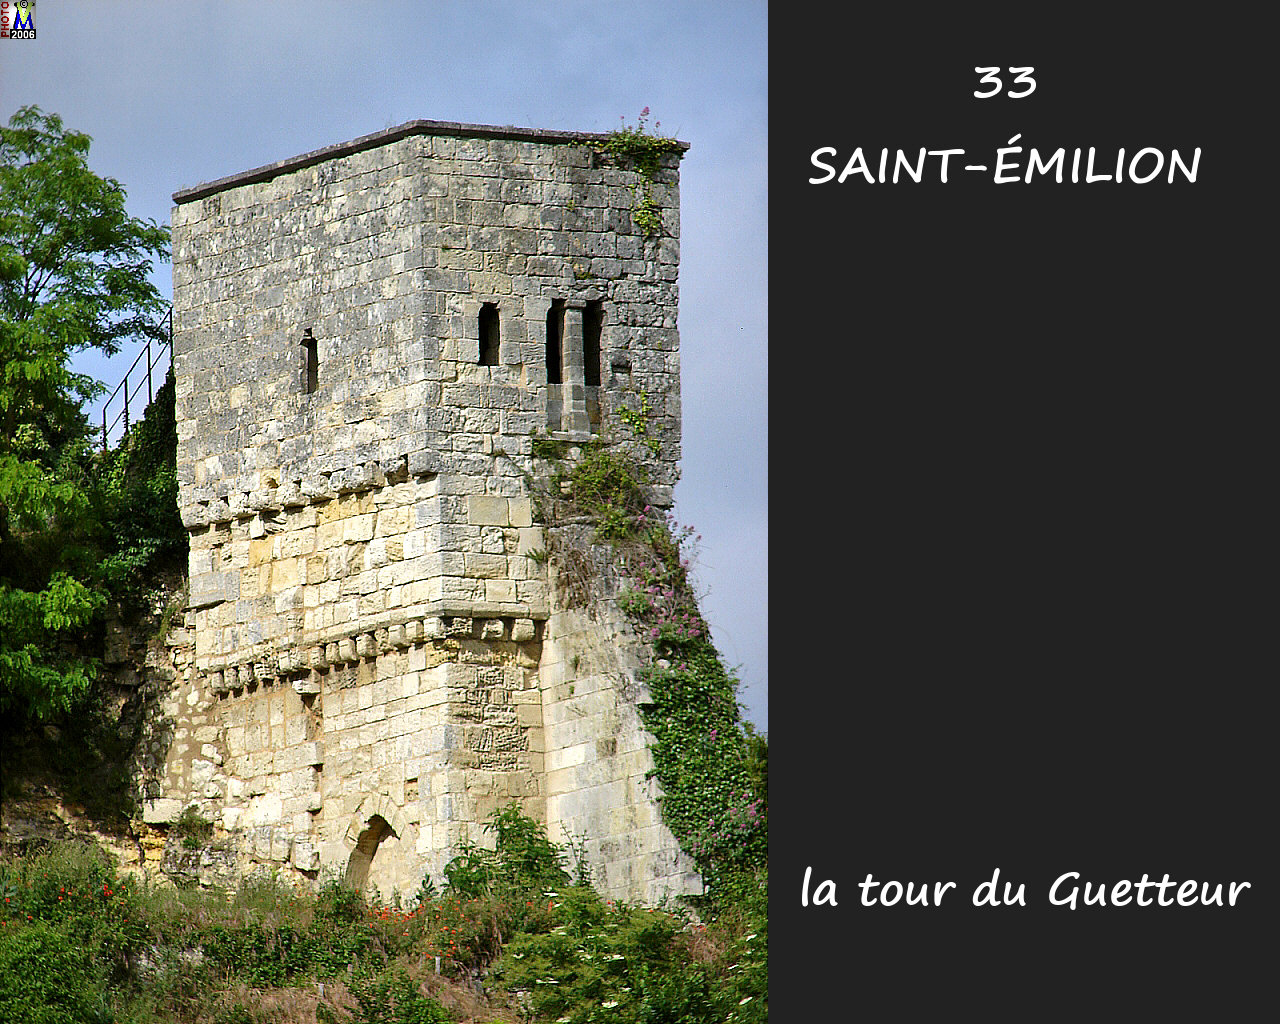 33StEMILION_tour_guetteur_100.jpg